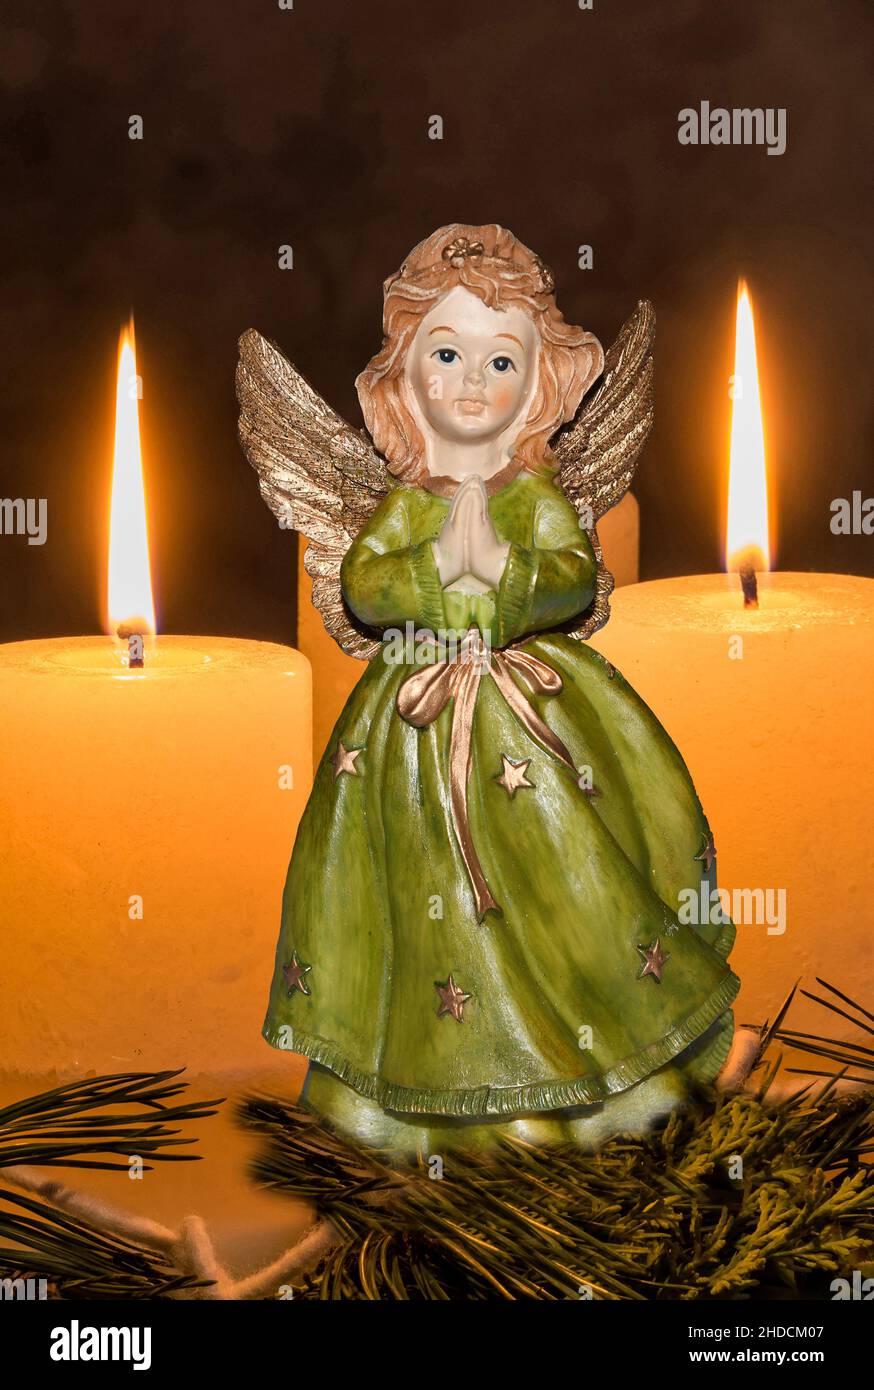 Ein Adventskranz zu Weihnachten sorgt für romatinsche Stimmung in der stillen Advent Zeit, 3. Advent, zwei brennende Kerzen, ENGEL, Weihnachtsengel, Stock Photo